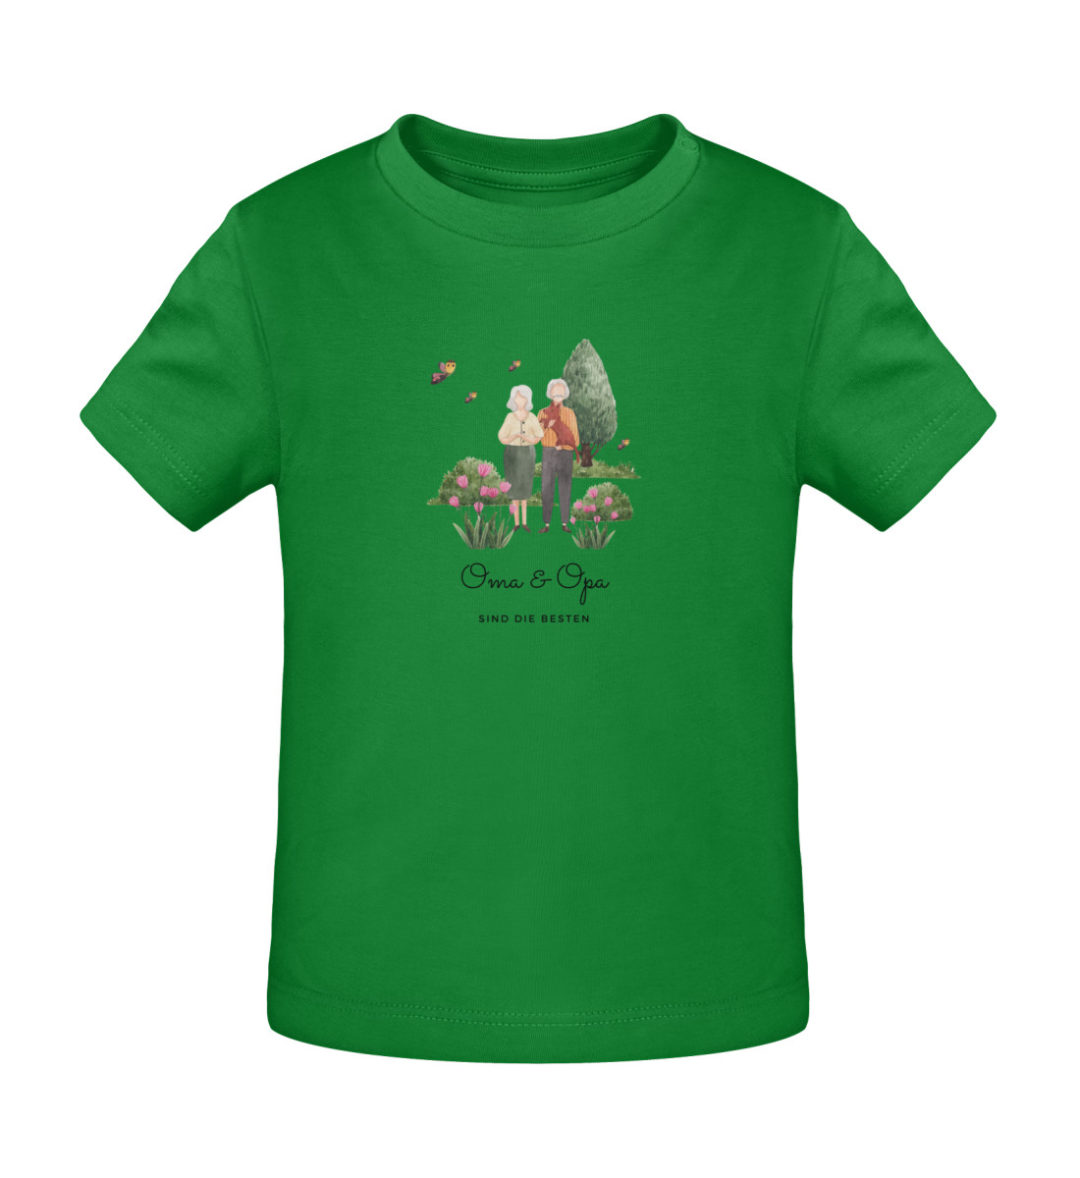 Oma & Opa sind die besten - Baby Creator T-Shirt ST/ST-6879